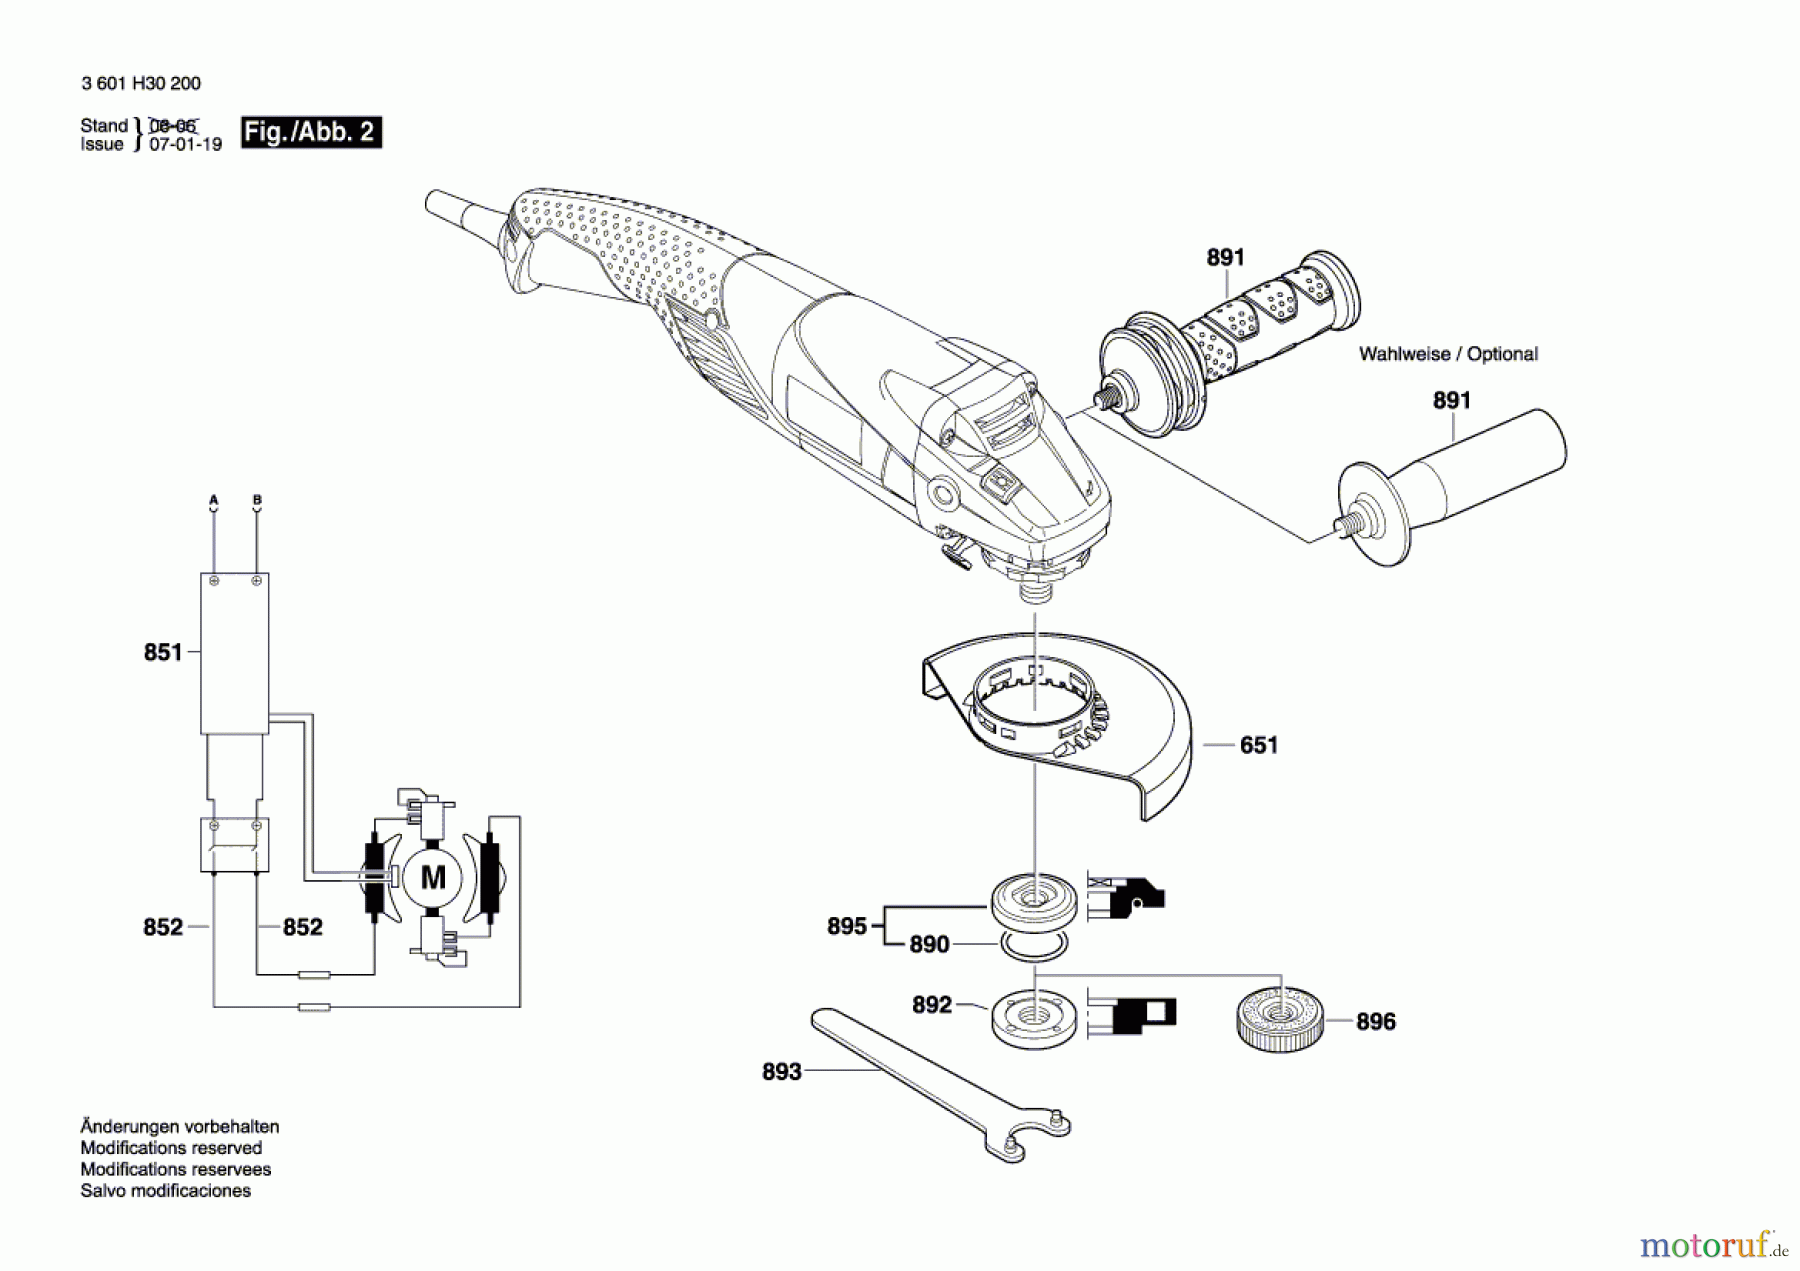  Bosch Werkzeug Winkelschleifer GWS 15-125 CIH Seite 2